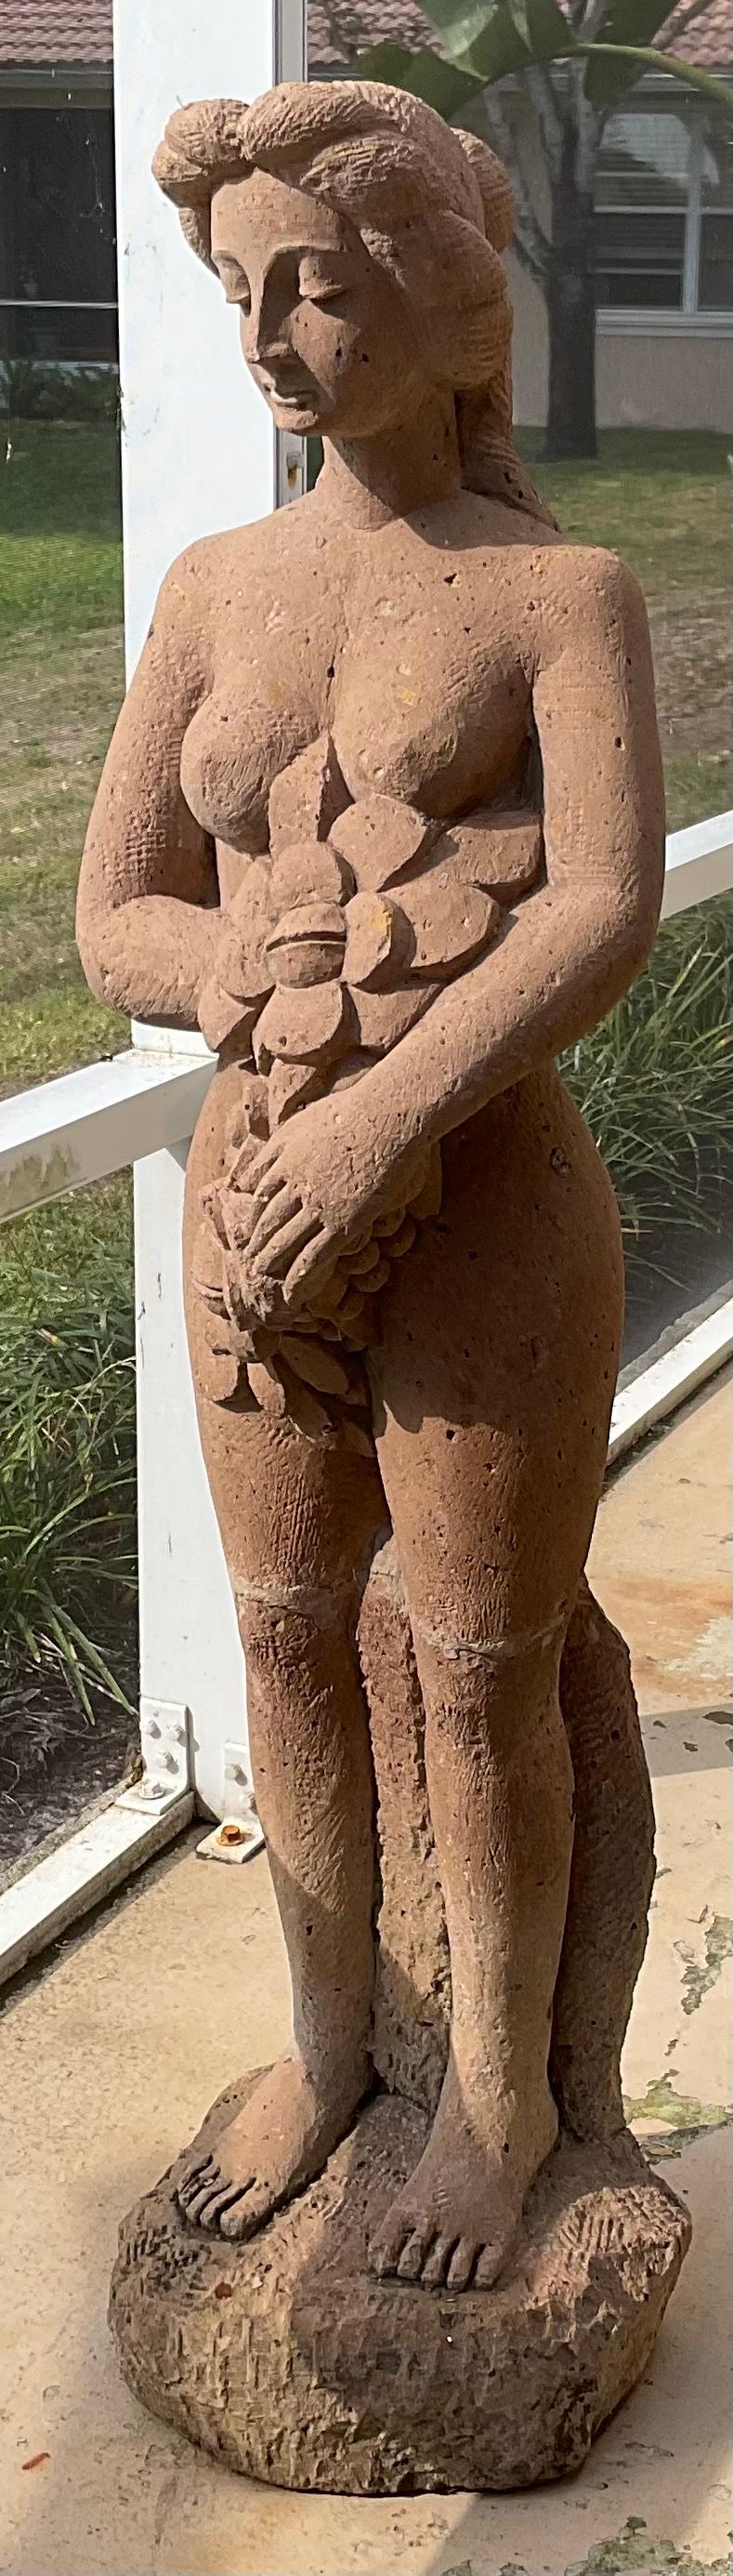 Wunderschöne handgeschnitzte Sandsteinskulptur eines Halbaktes einer stehenden Frau im klassischen griechischen Stil - eine attraktive Skulptur für den Außenbereich oder ein außergewöhnliches Kunstobjekt für den Innenbereich.
    